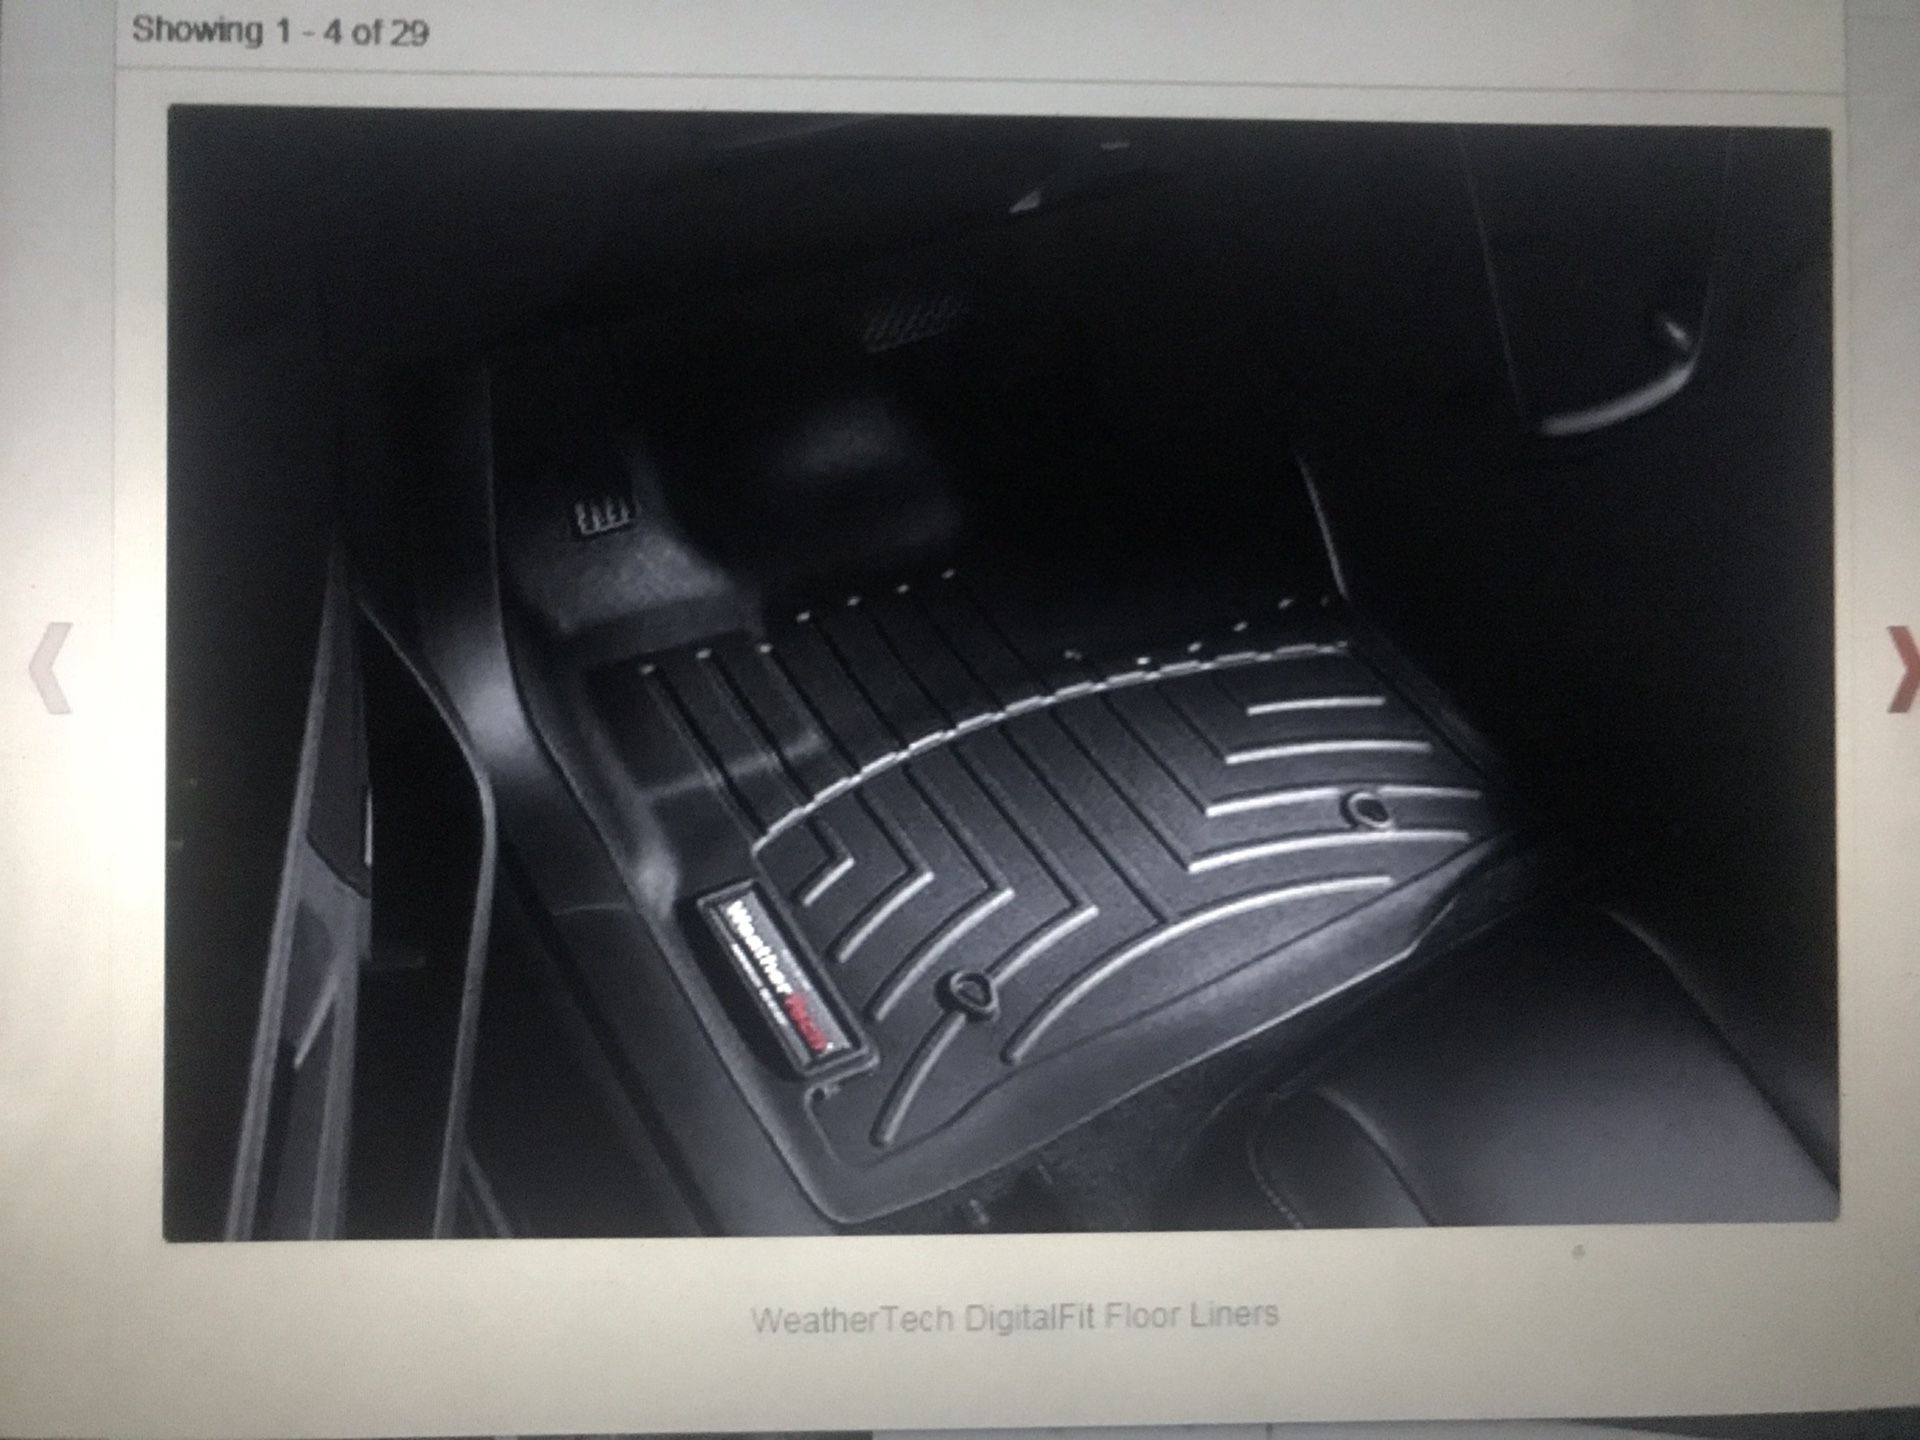 Audi Weather Tech Digital Fit Floor Liner